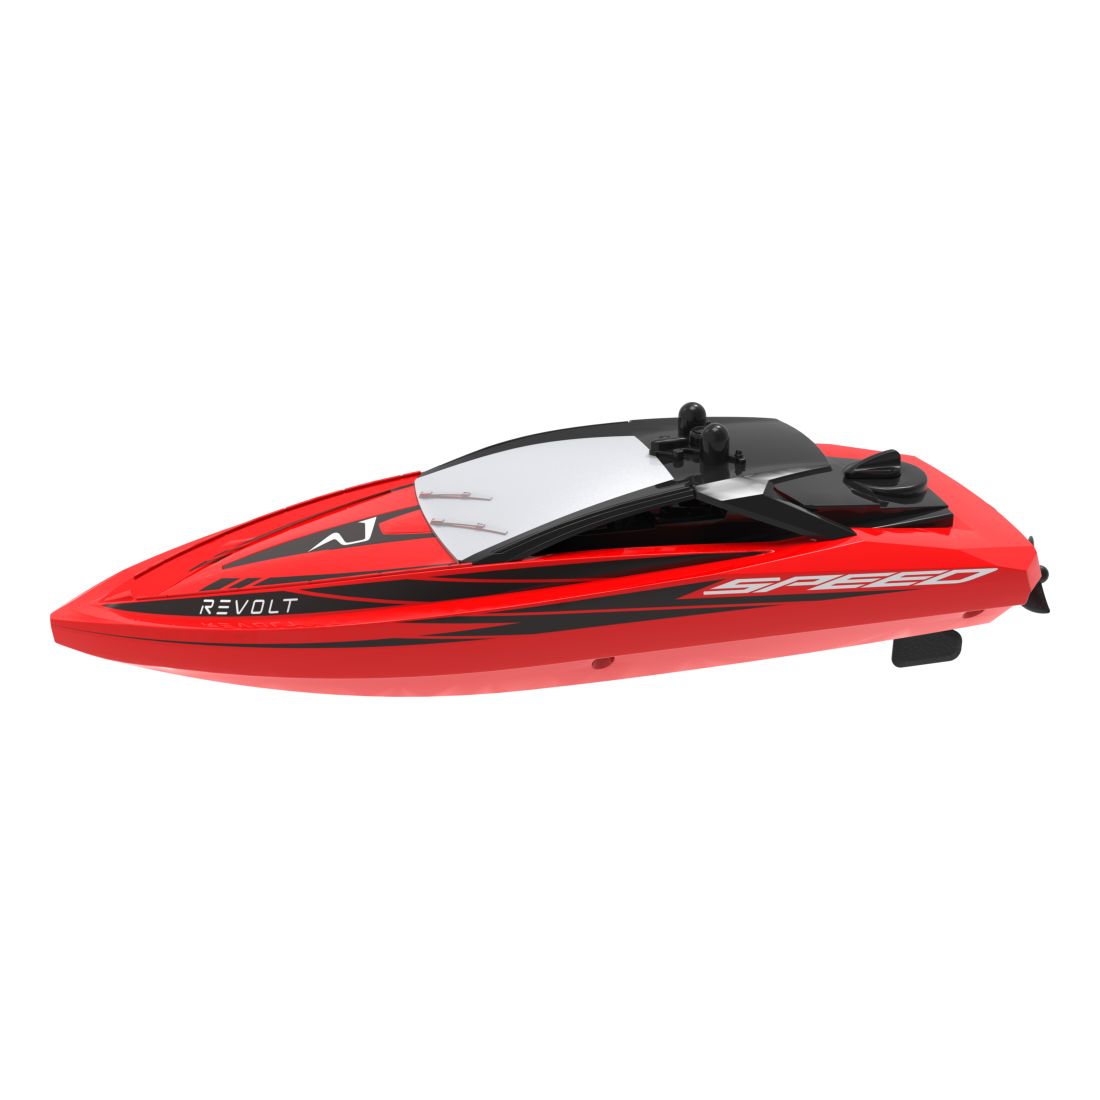 Syma Q5 Galaxy R/C Mini Speed Boat Red